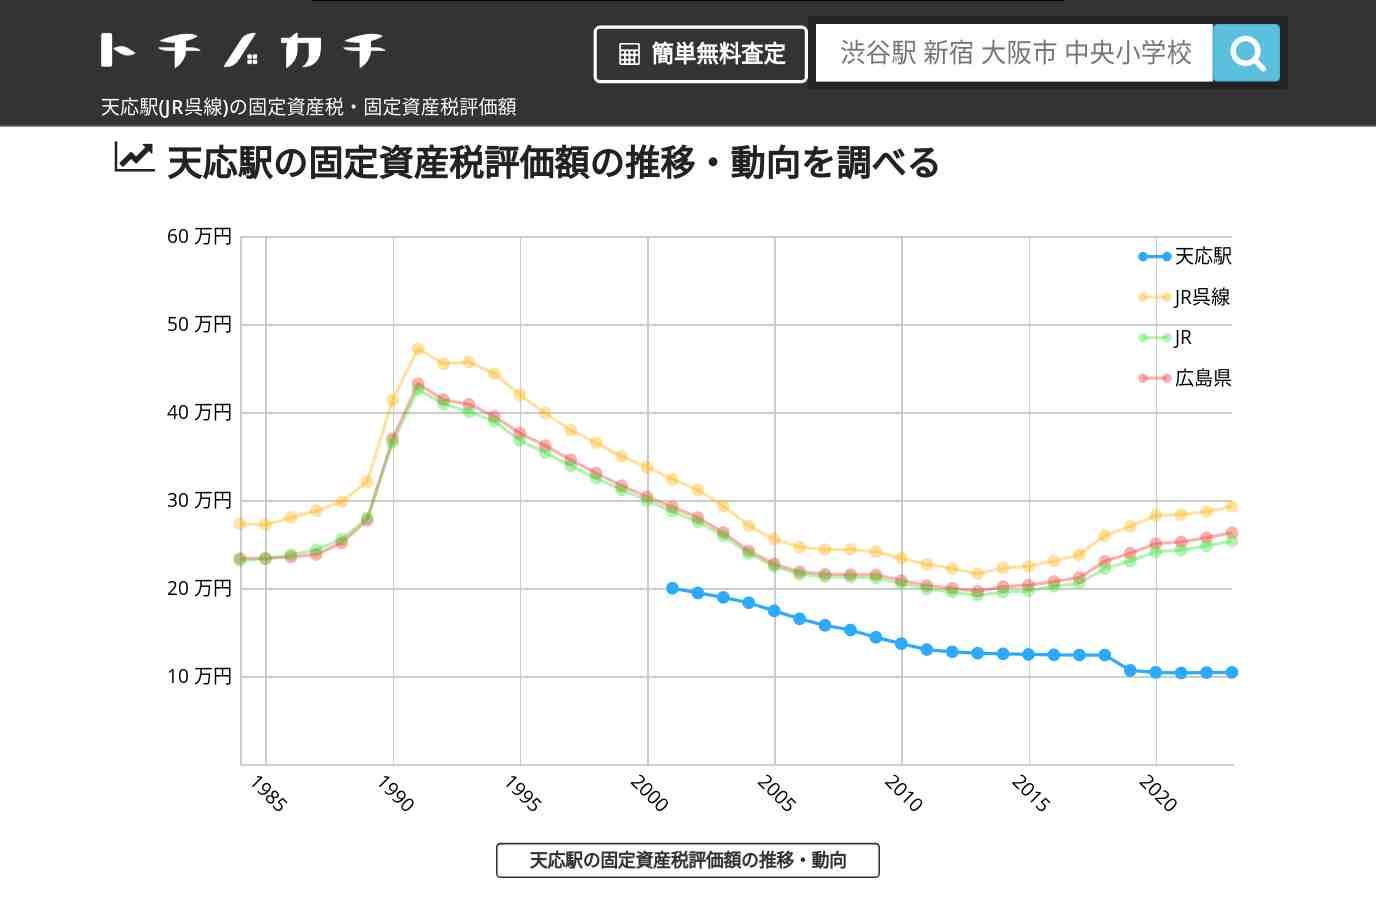 天応駅(JR呉線)の固定資産税・固定資産税評価額 | トチノカチ